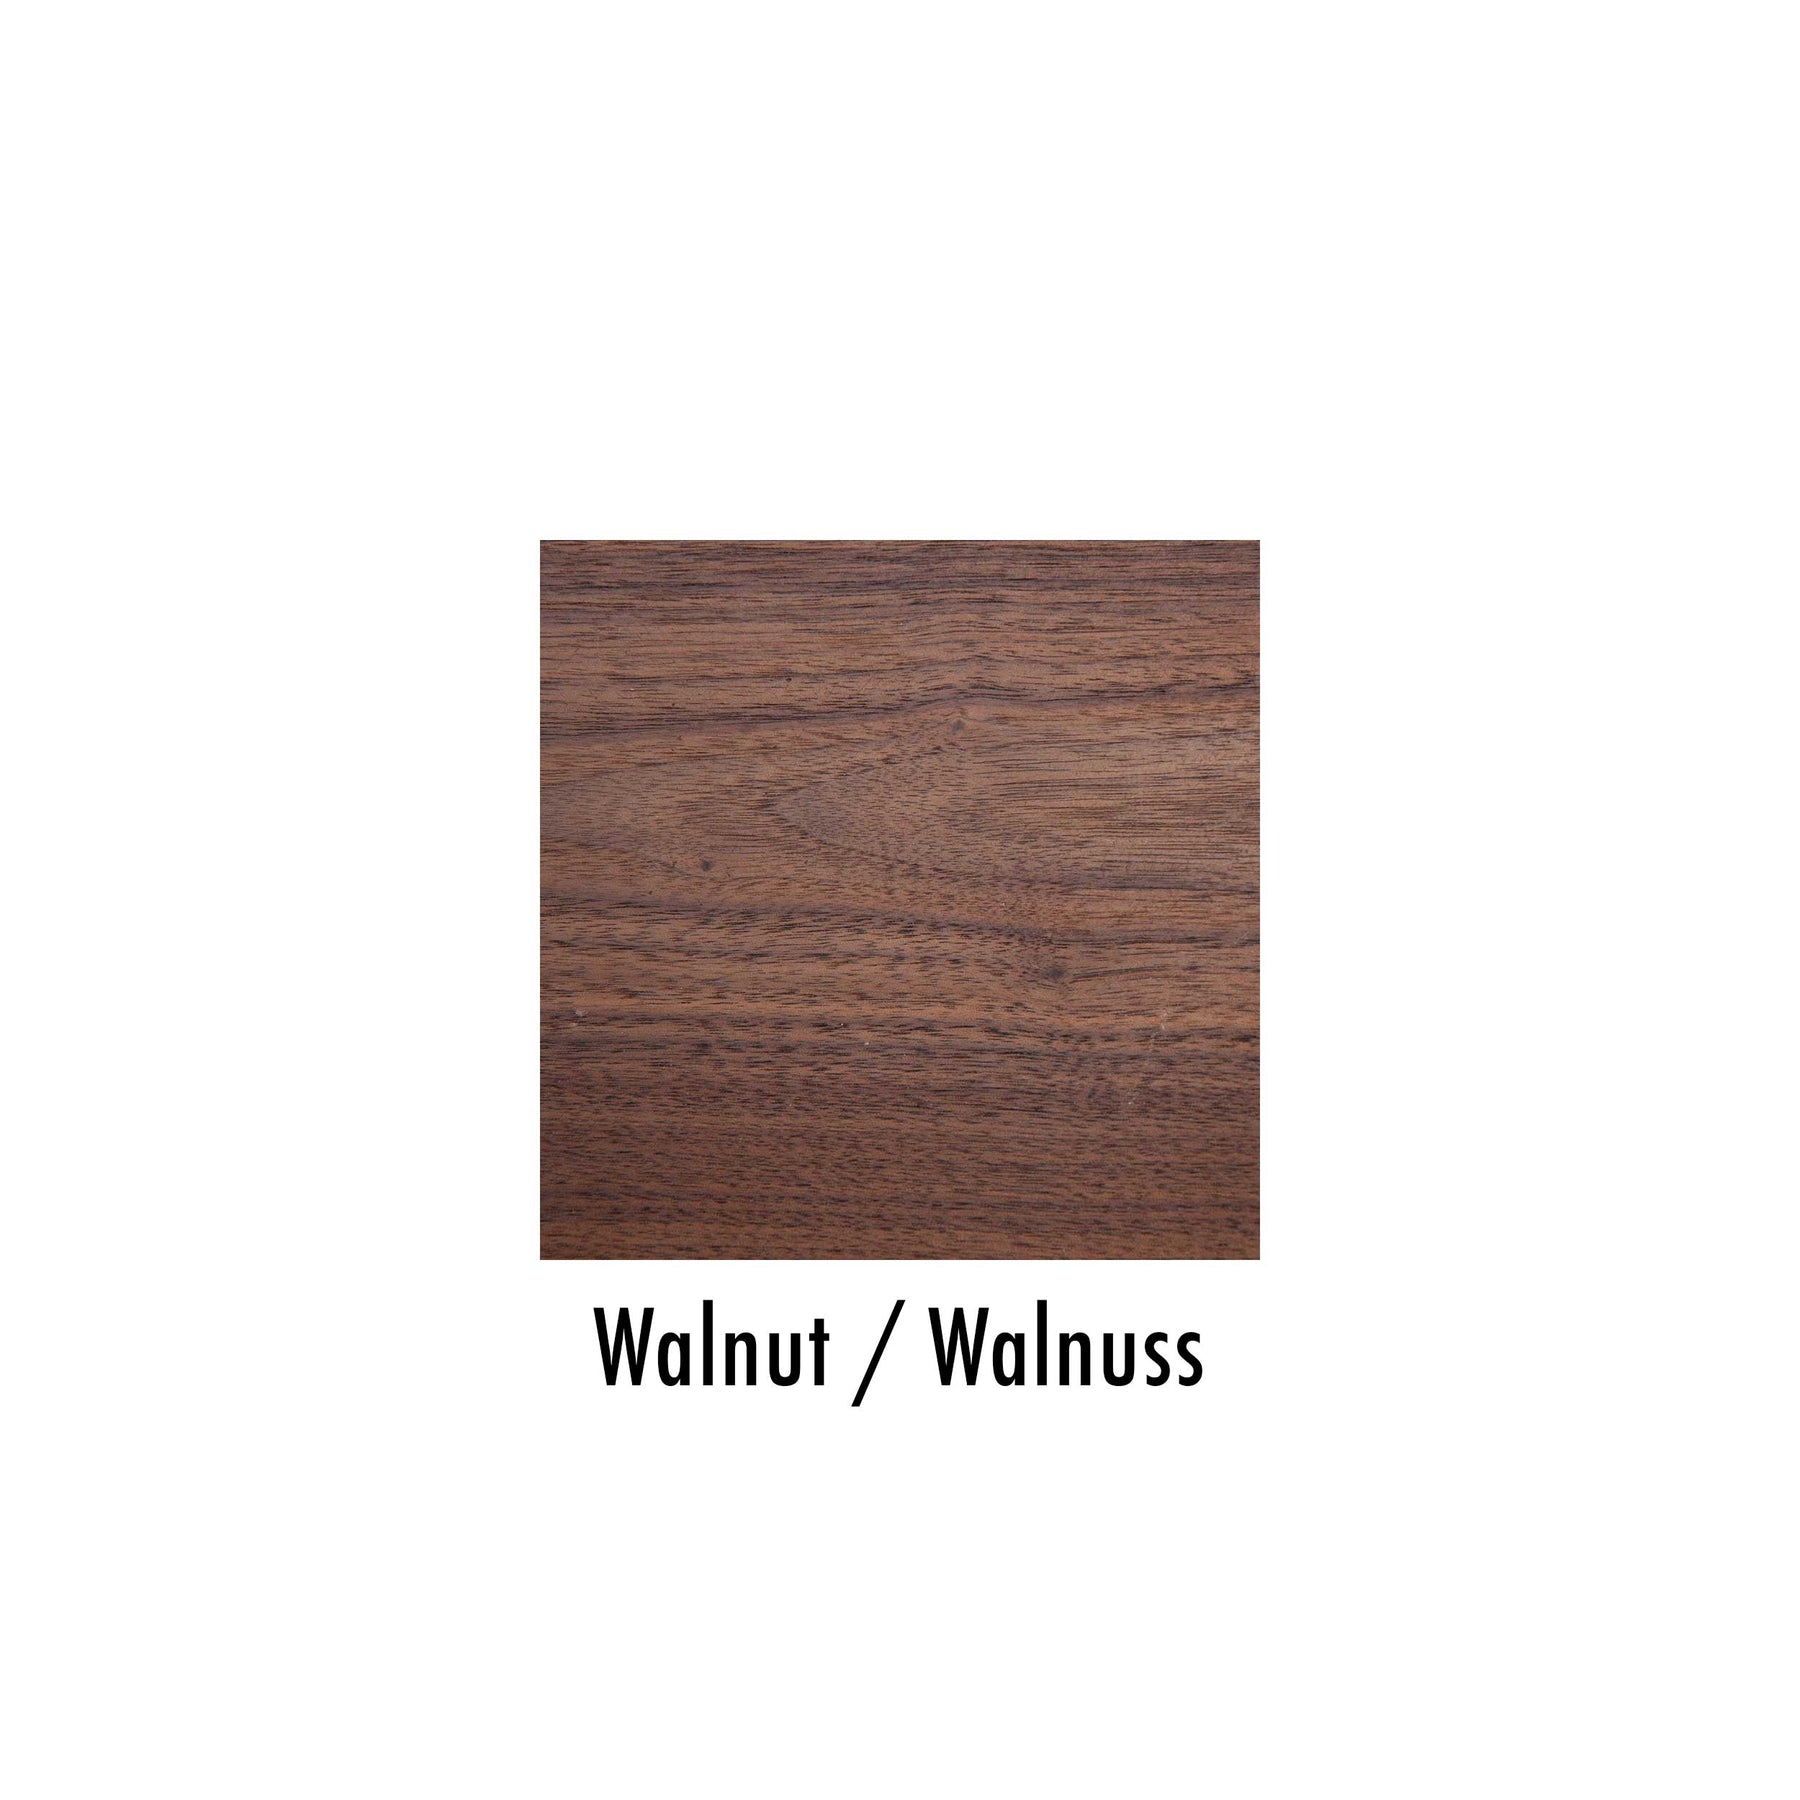 Großansicht der Holzoberfläche aus Walnuss-Holz.